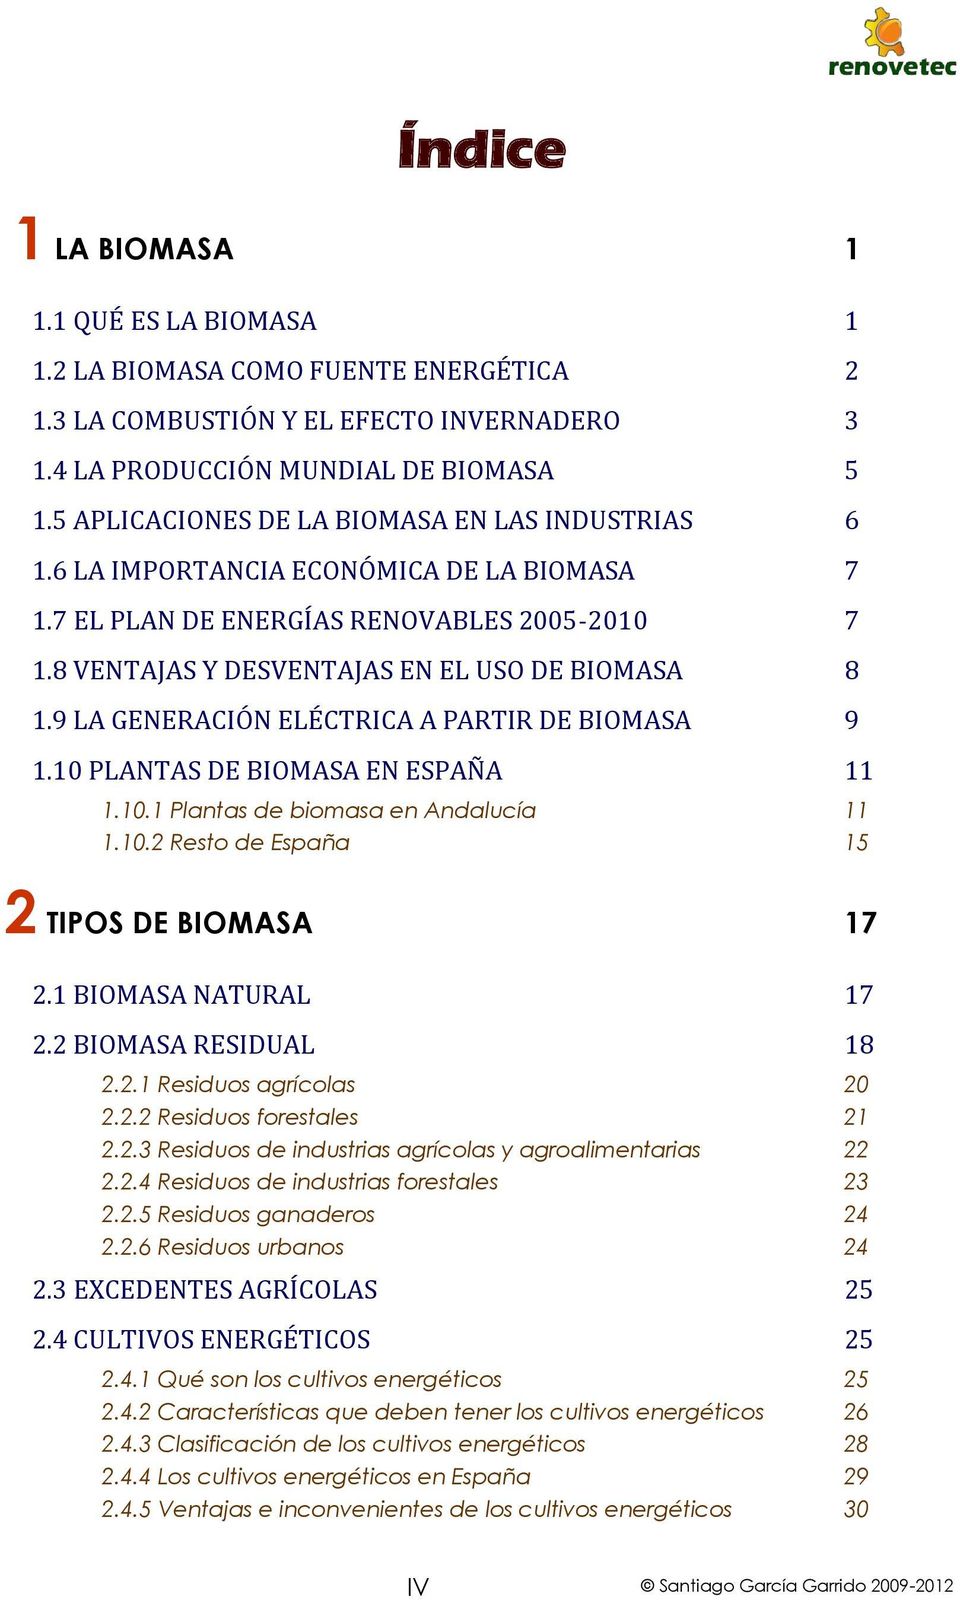 9 LA GENERACIÓN ELÉCTRICA A PARTIR DE BIOMASA 9 1.10 PLANTAS DE BIOMASA EN ESPAÑA 11 1.10.1 Plantas de biomasa en Andalucía 11 1.10.2 Resto de España 15 2 TIPOS DE BIOMASA 17 2.1 BIOMASA NATURAL 17 2.